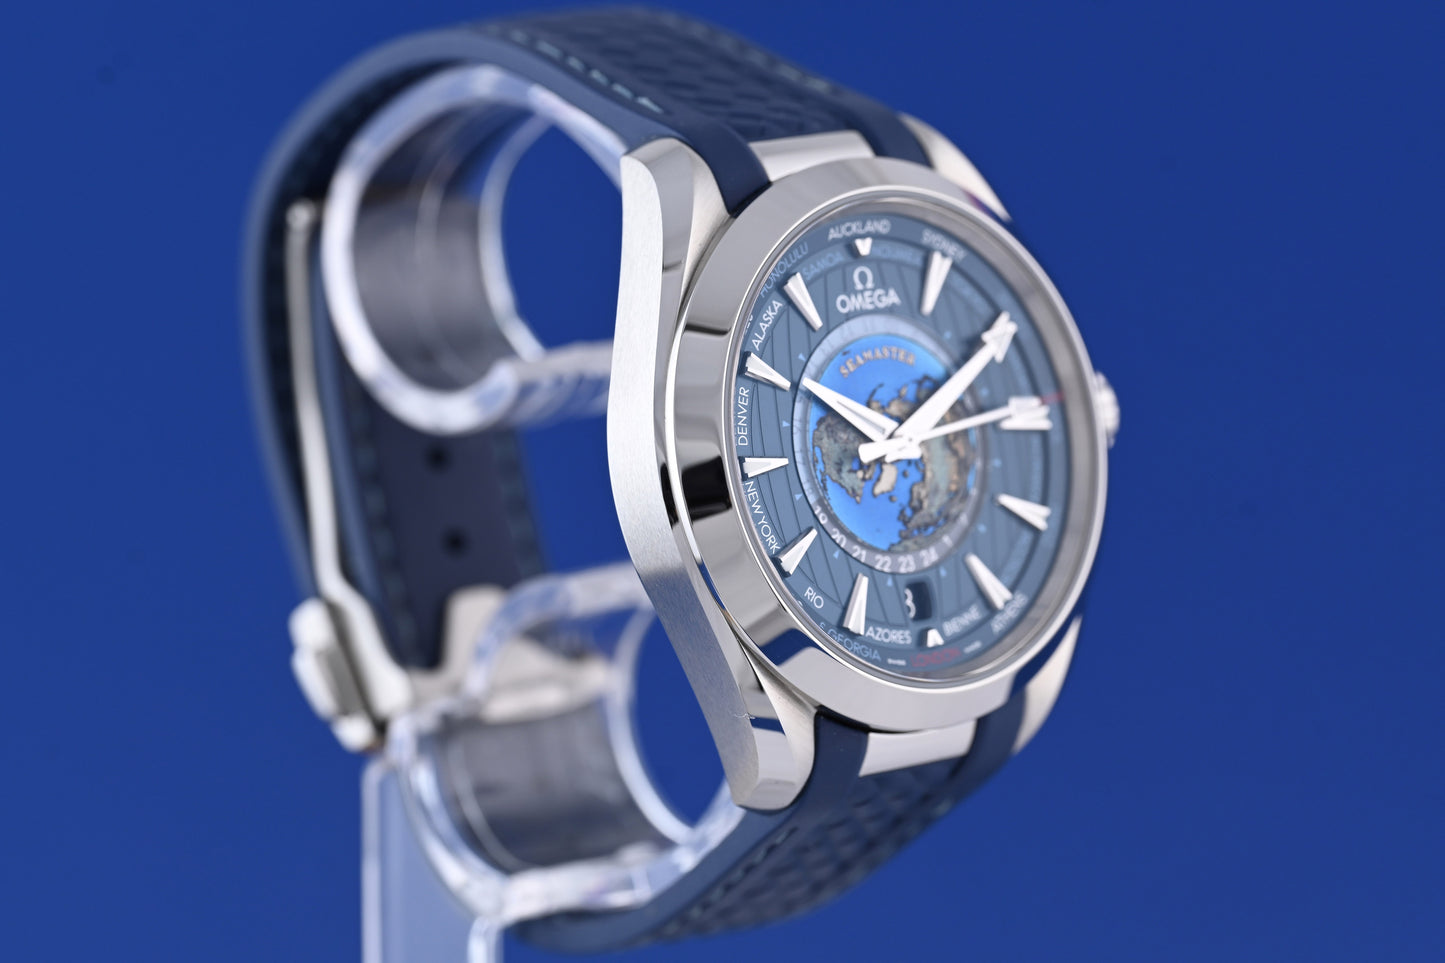 OMEGA Seamaster Aqua Terra Automatic Blue Dial - World Timer - Full Set